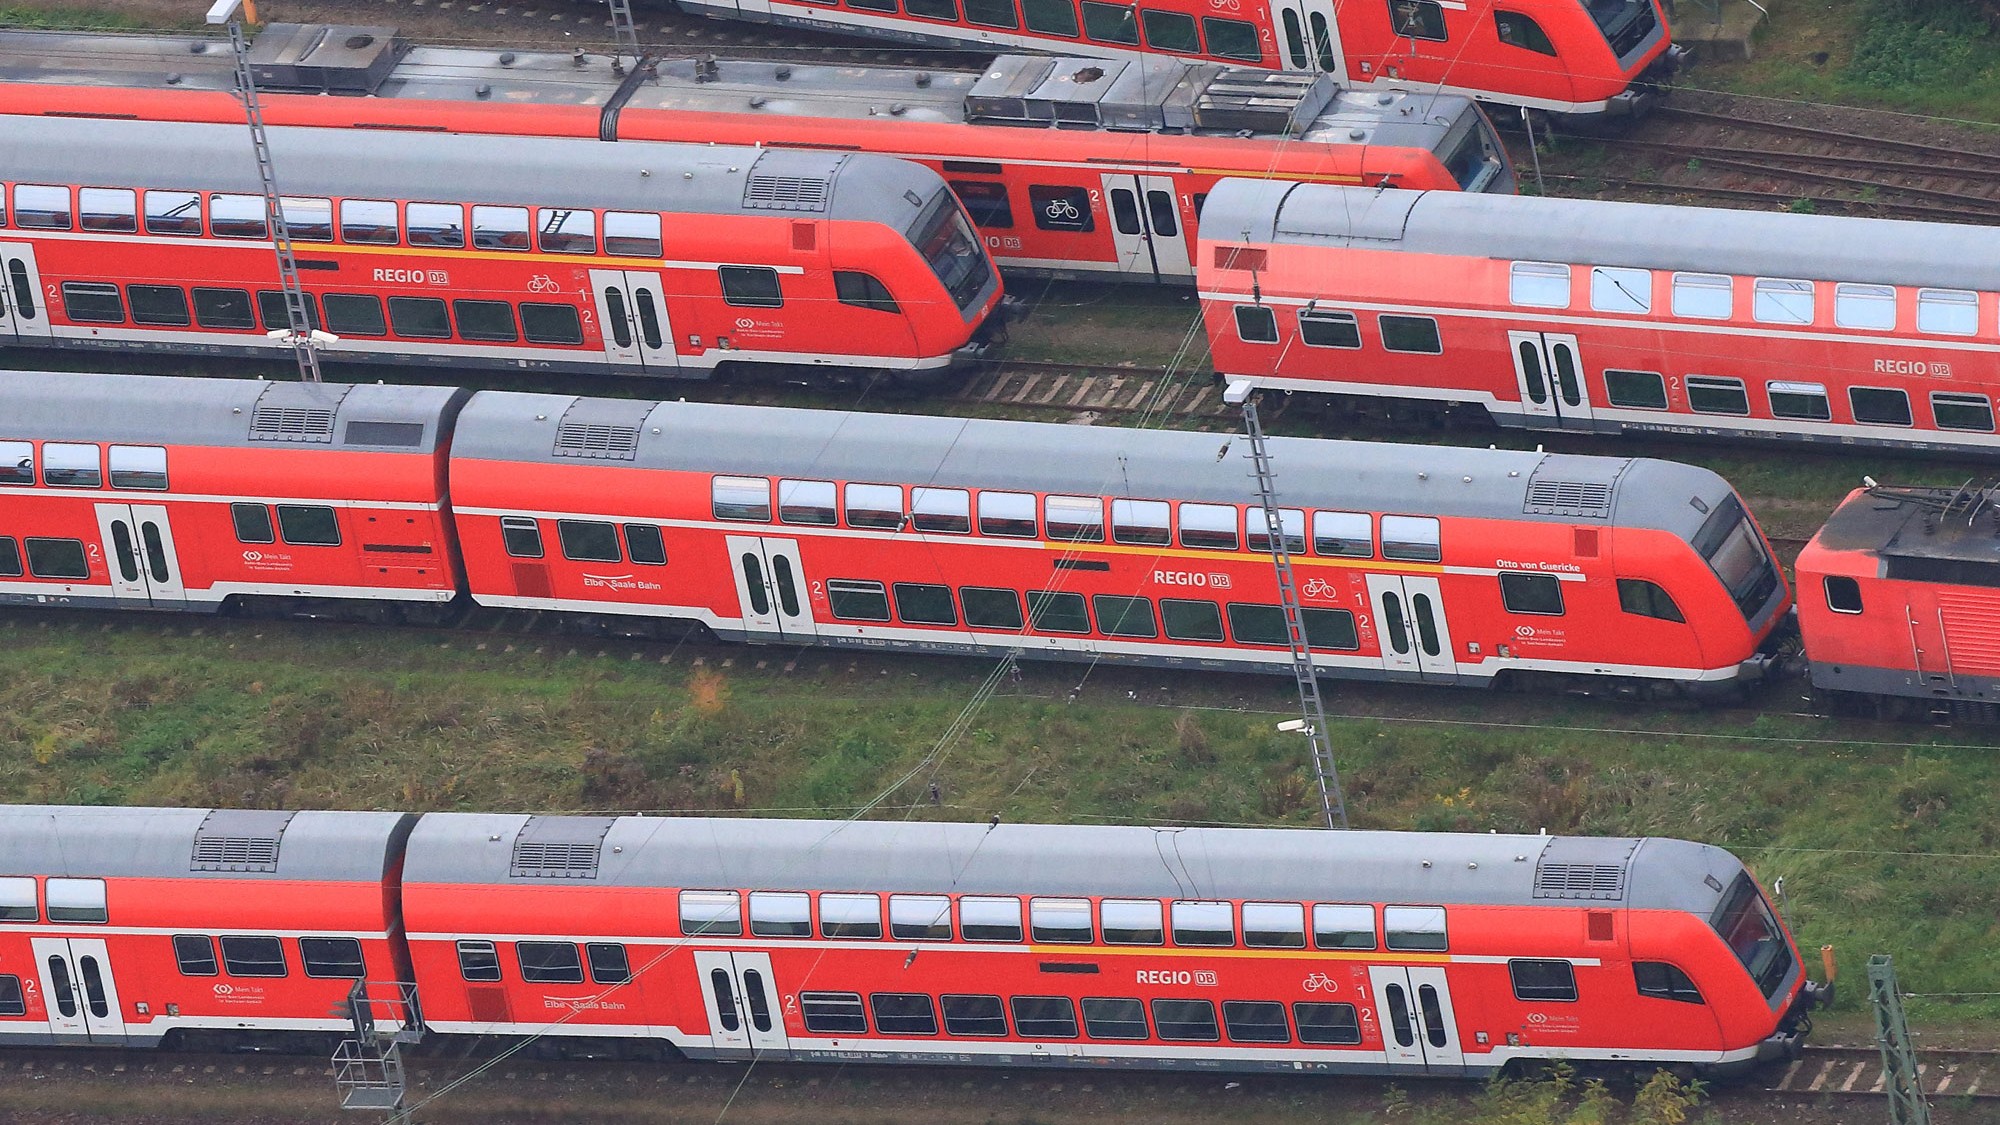 Warum die S-Bahn in Hamburg besser ist als in Berlin